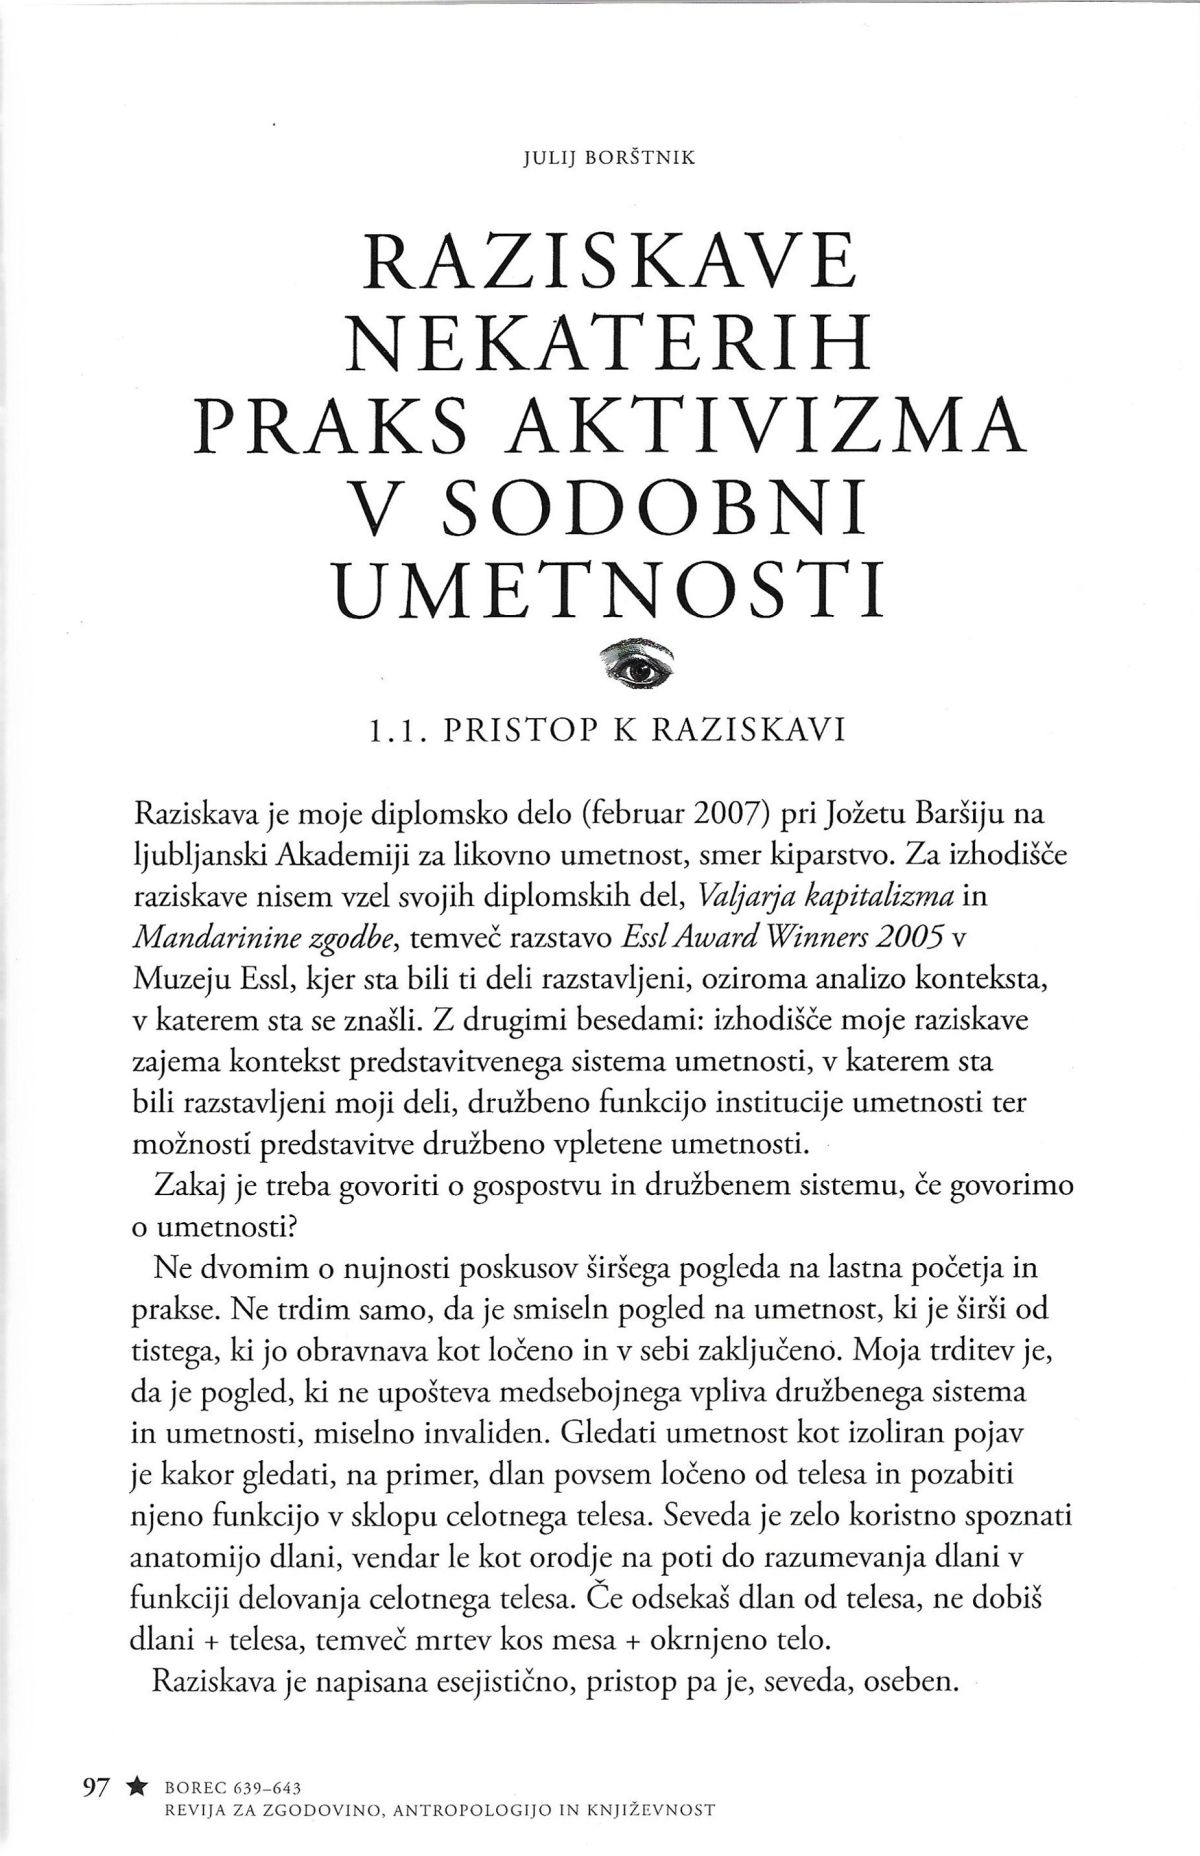 Diplomska naloga v reviji Borec 639-643 - PRISTOP K RAZPRAVI.